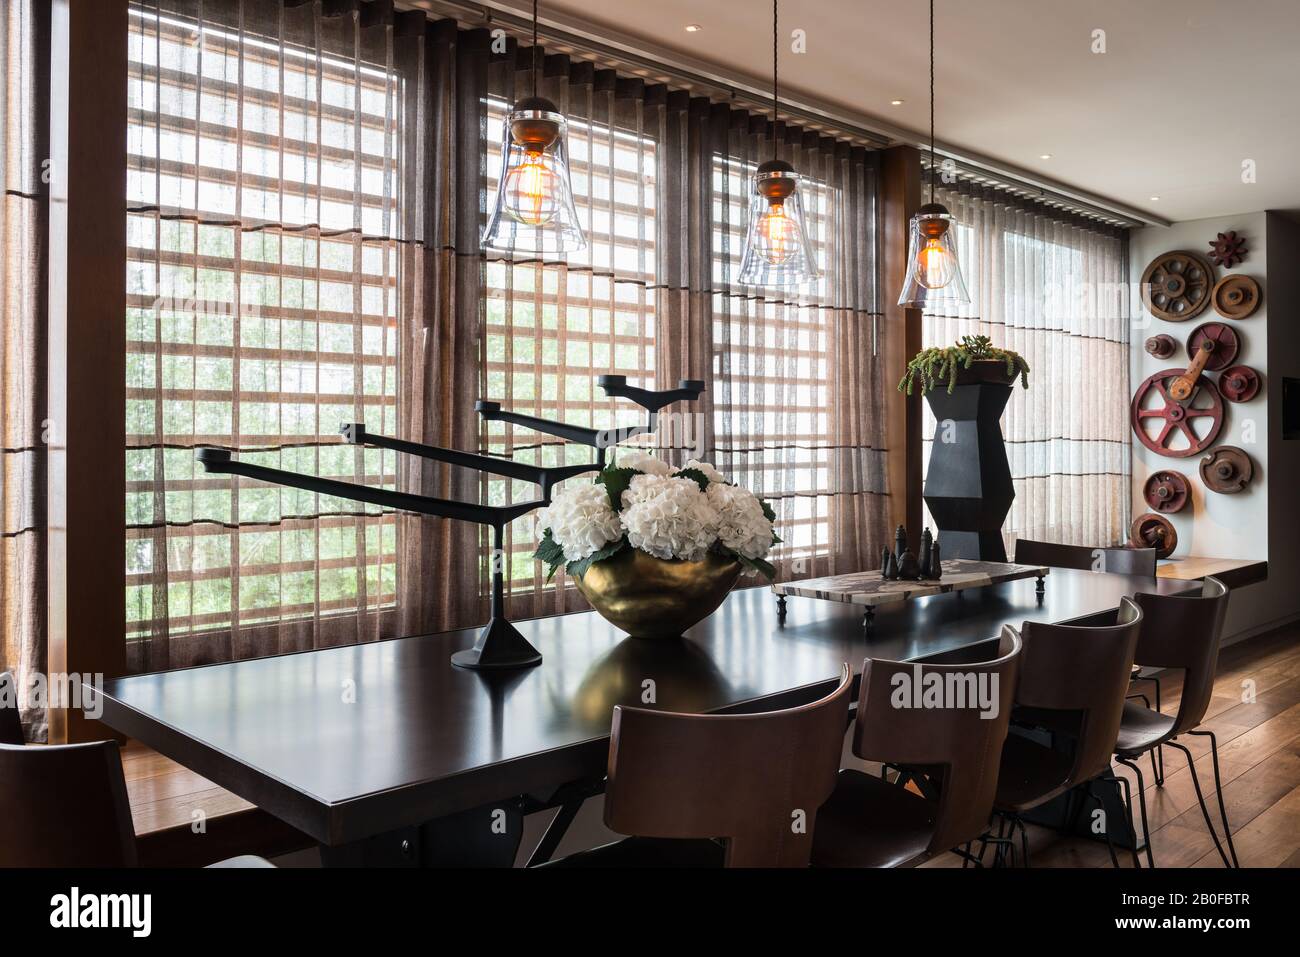 Lámparas colgantes de vidrio sobre mesa de comedor con hidrangea en jarrón de cobre Foto de stock